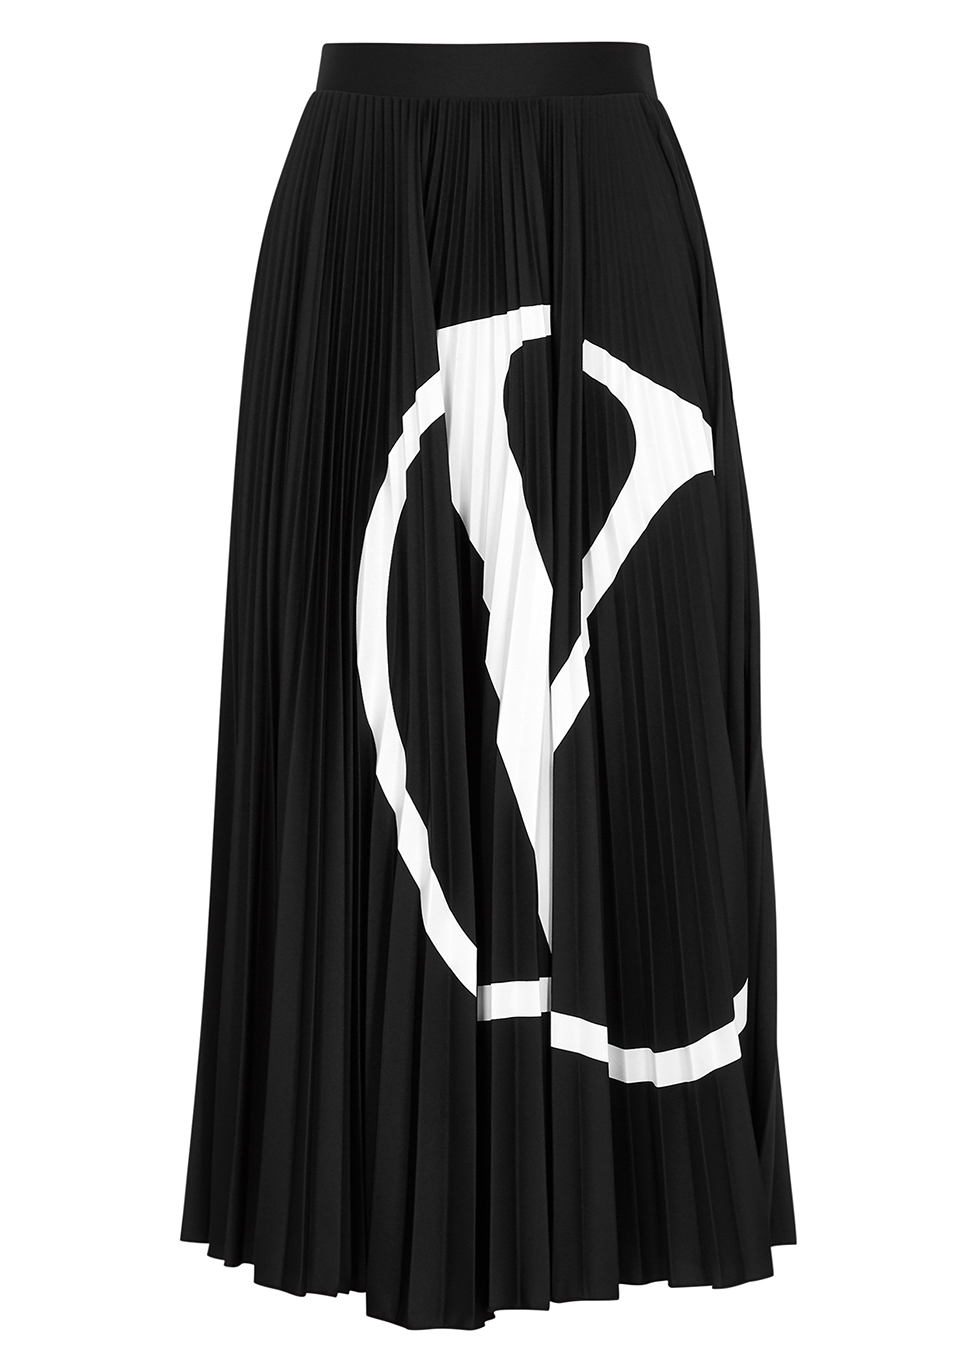 VLogo black pleated midi skirt